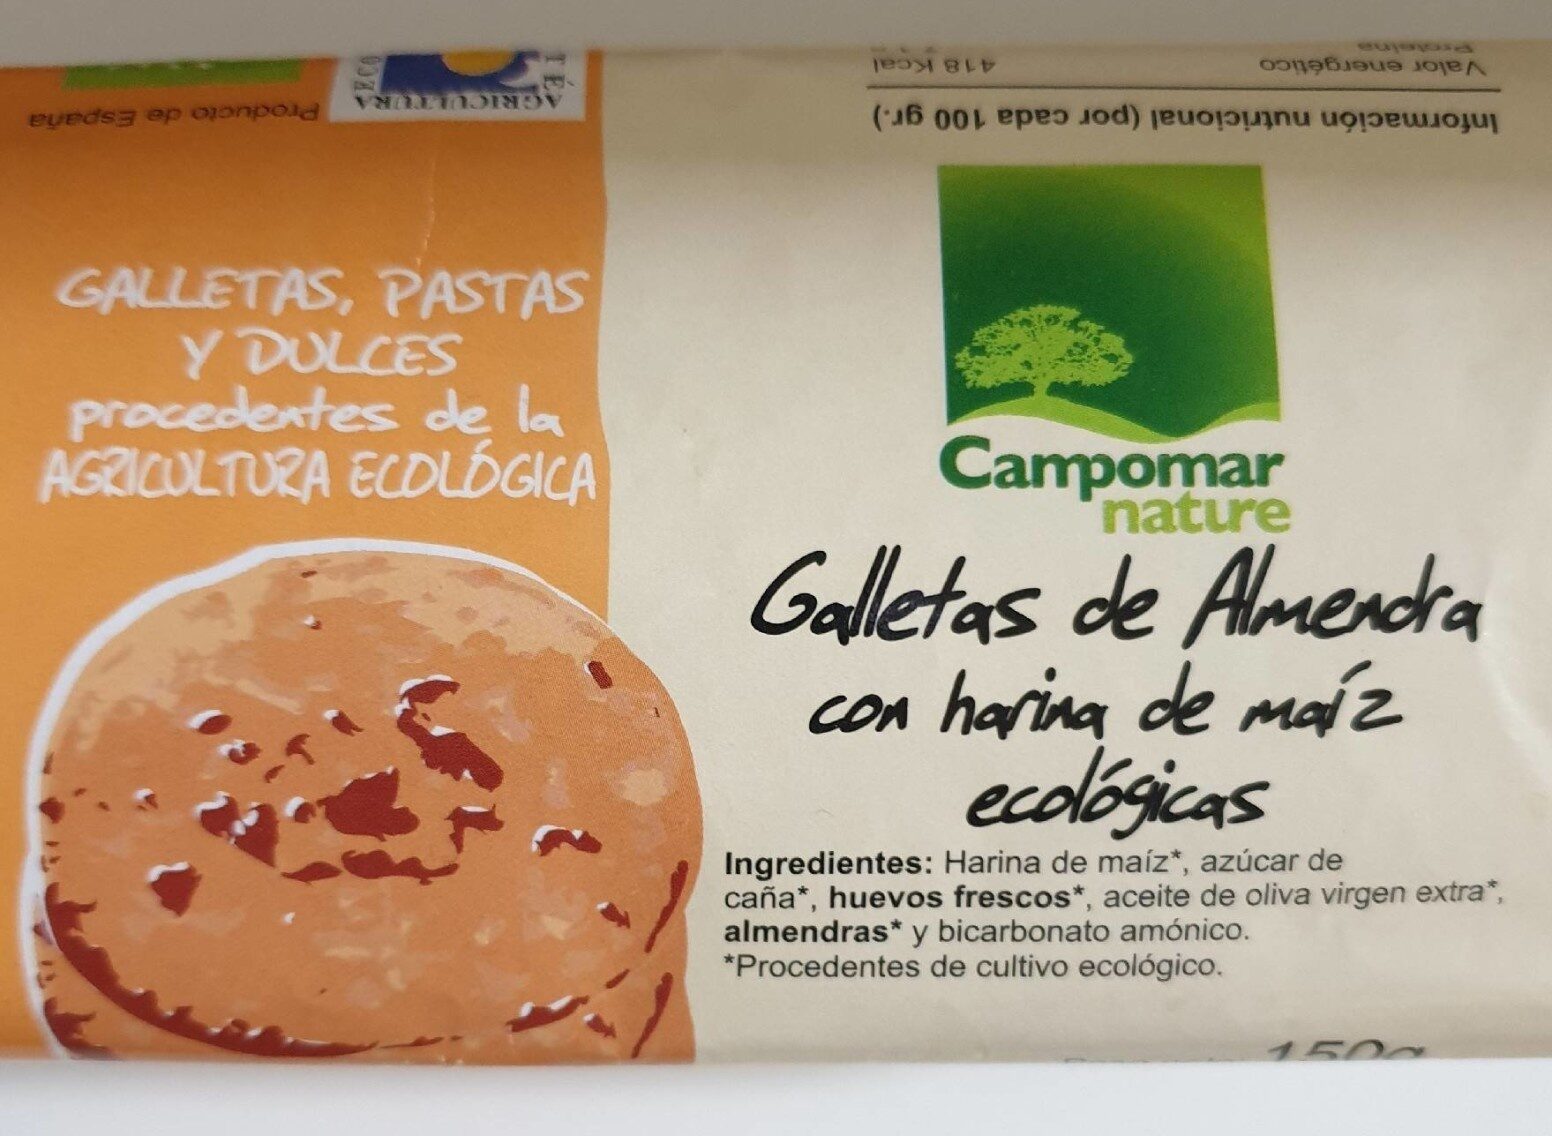 Galletas de almendra con harina de maíz ecologicas - Product - es